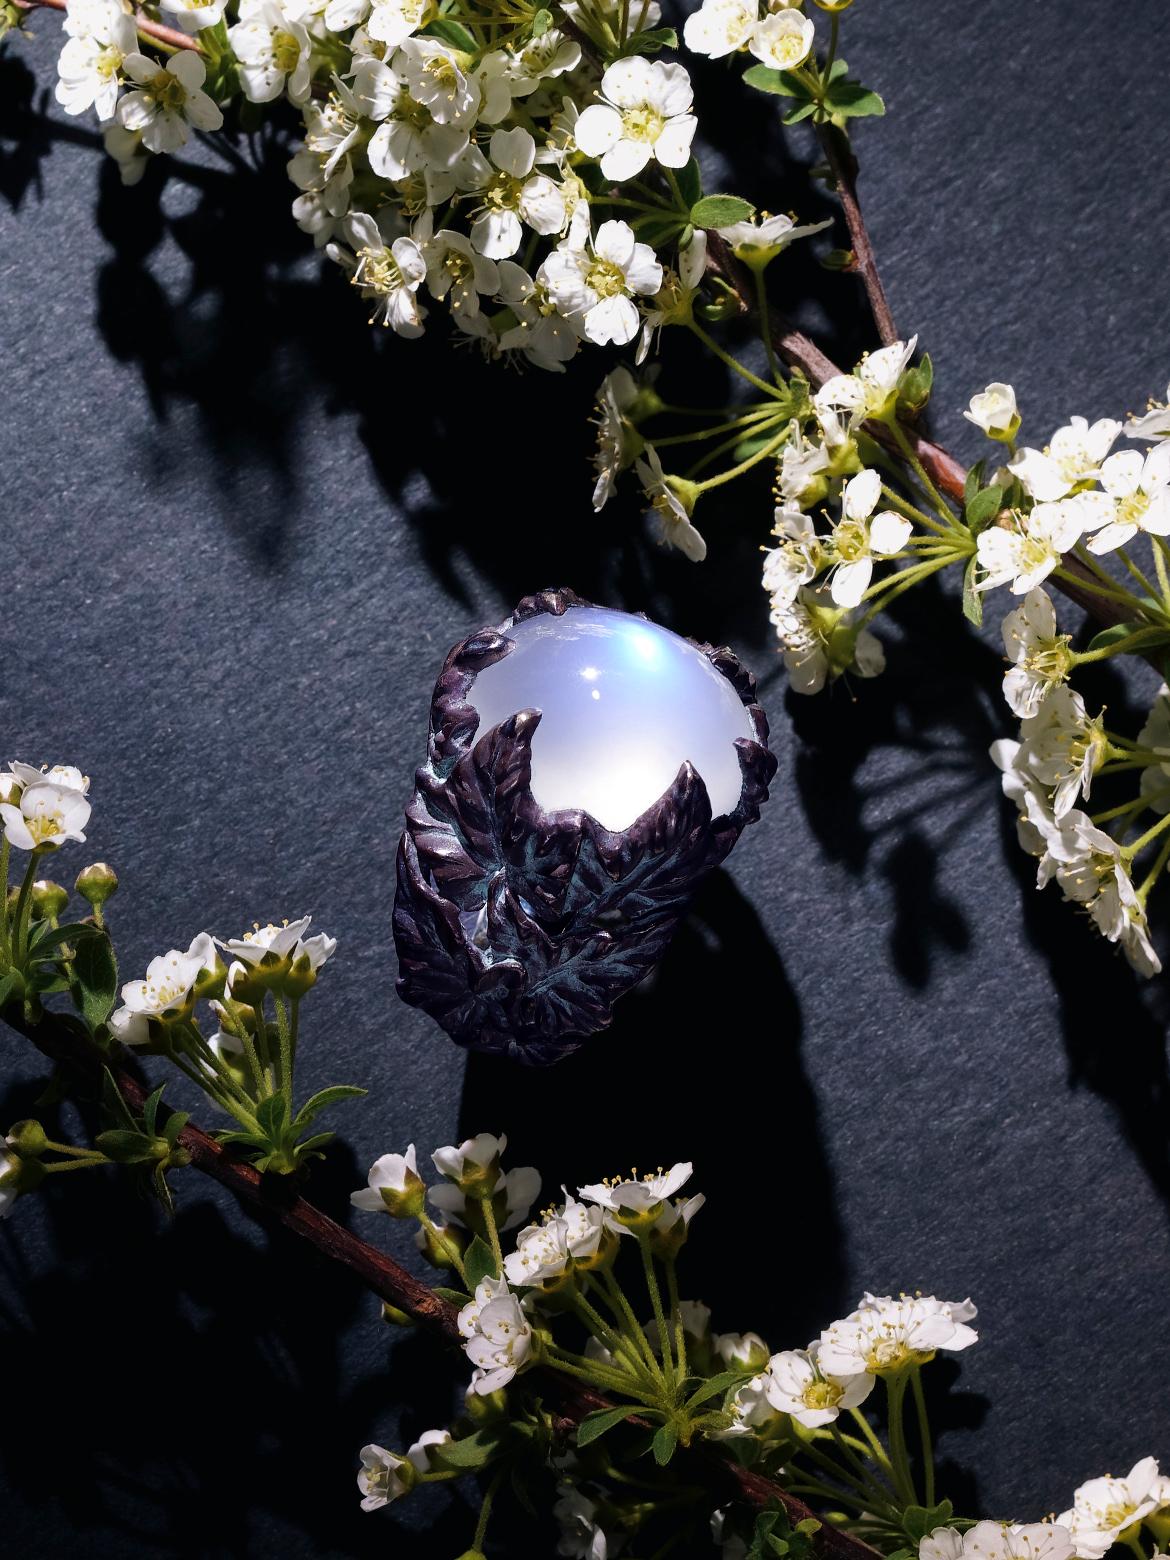 Bague en argent noirci, pierre de lune naturelle Adularia bleue
Origine de la pierre de lune - Tanzanie
Dimensions de la pierre de lune - 0,47 х 0,63 in / 12 х 16 mm
Poids de la pierre - 15 carats
Taille de la bague - 8.5 US - 58 EU
poids de la